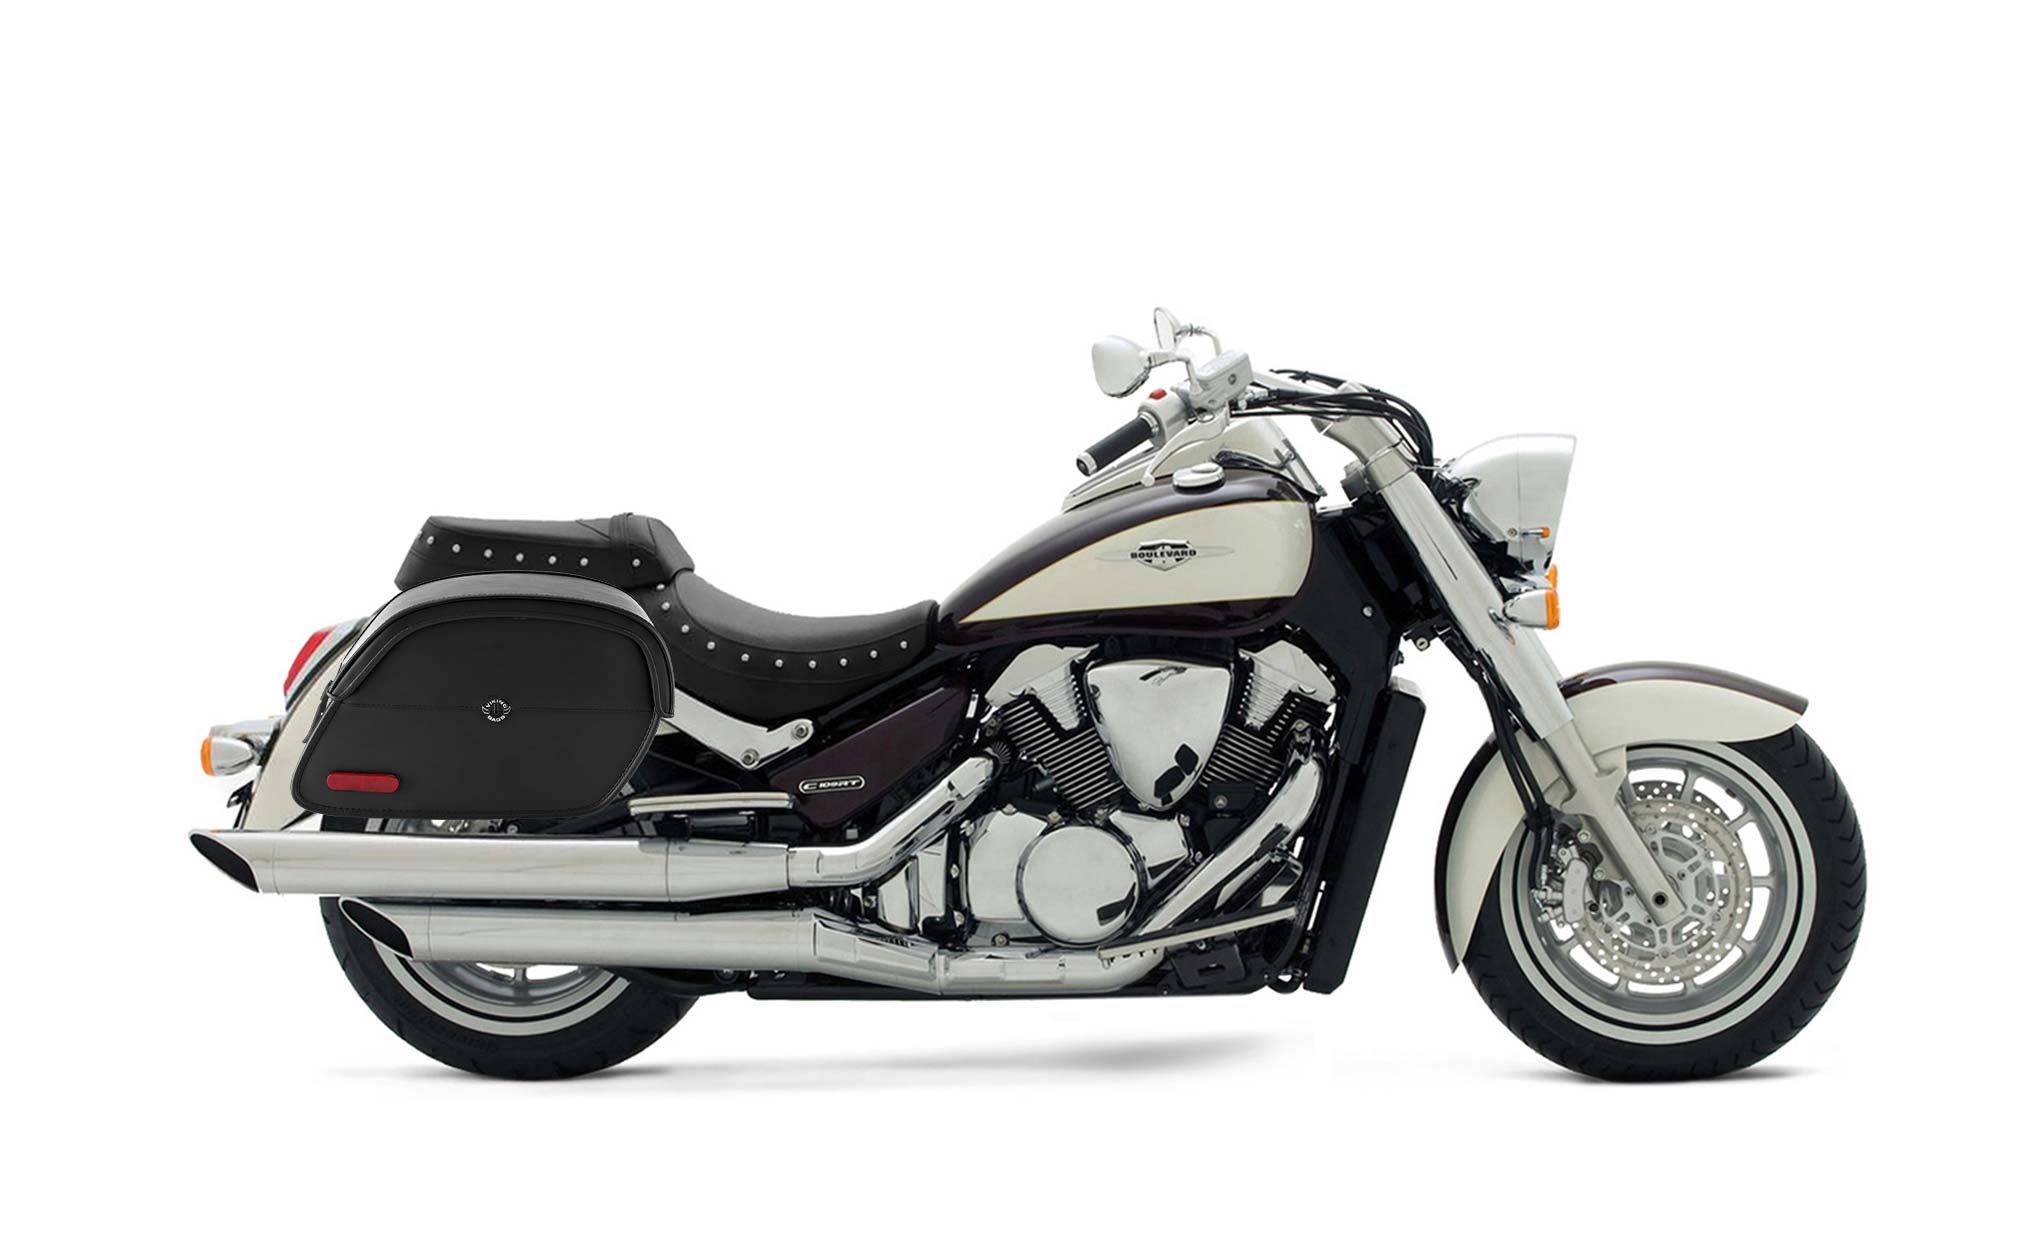 Viking California Large Suzuki Boulevard C109 Leather Motorcycle Saddlebags on Bike Photo @expand